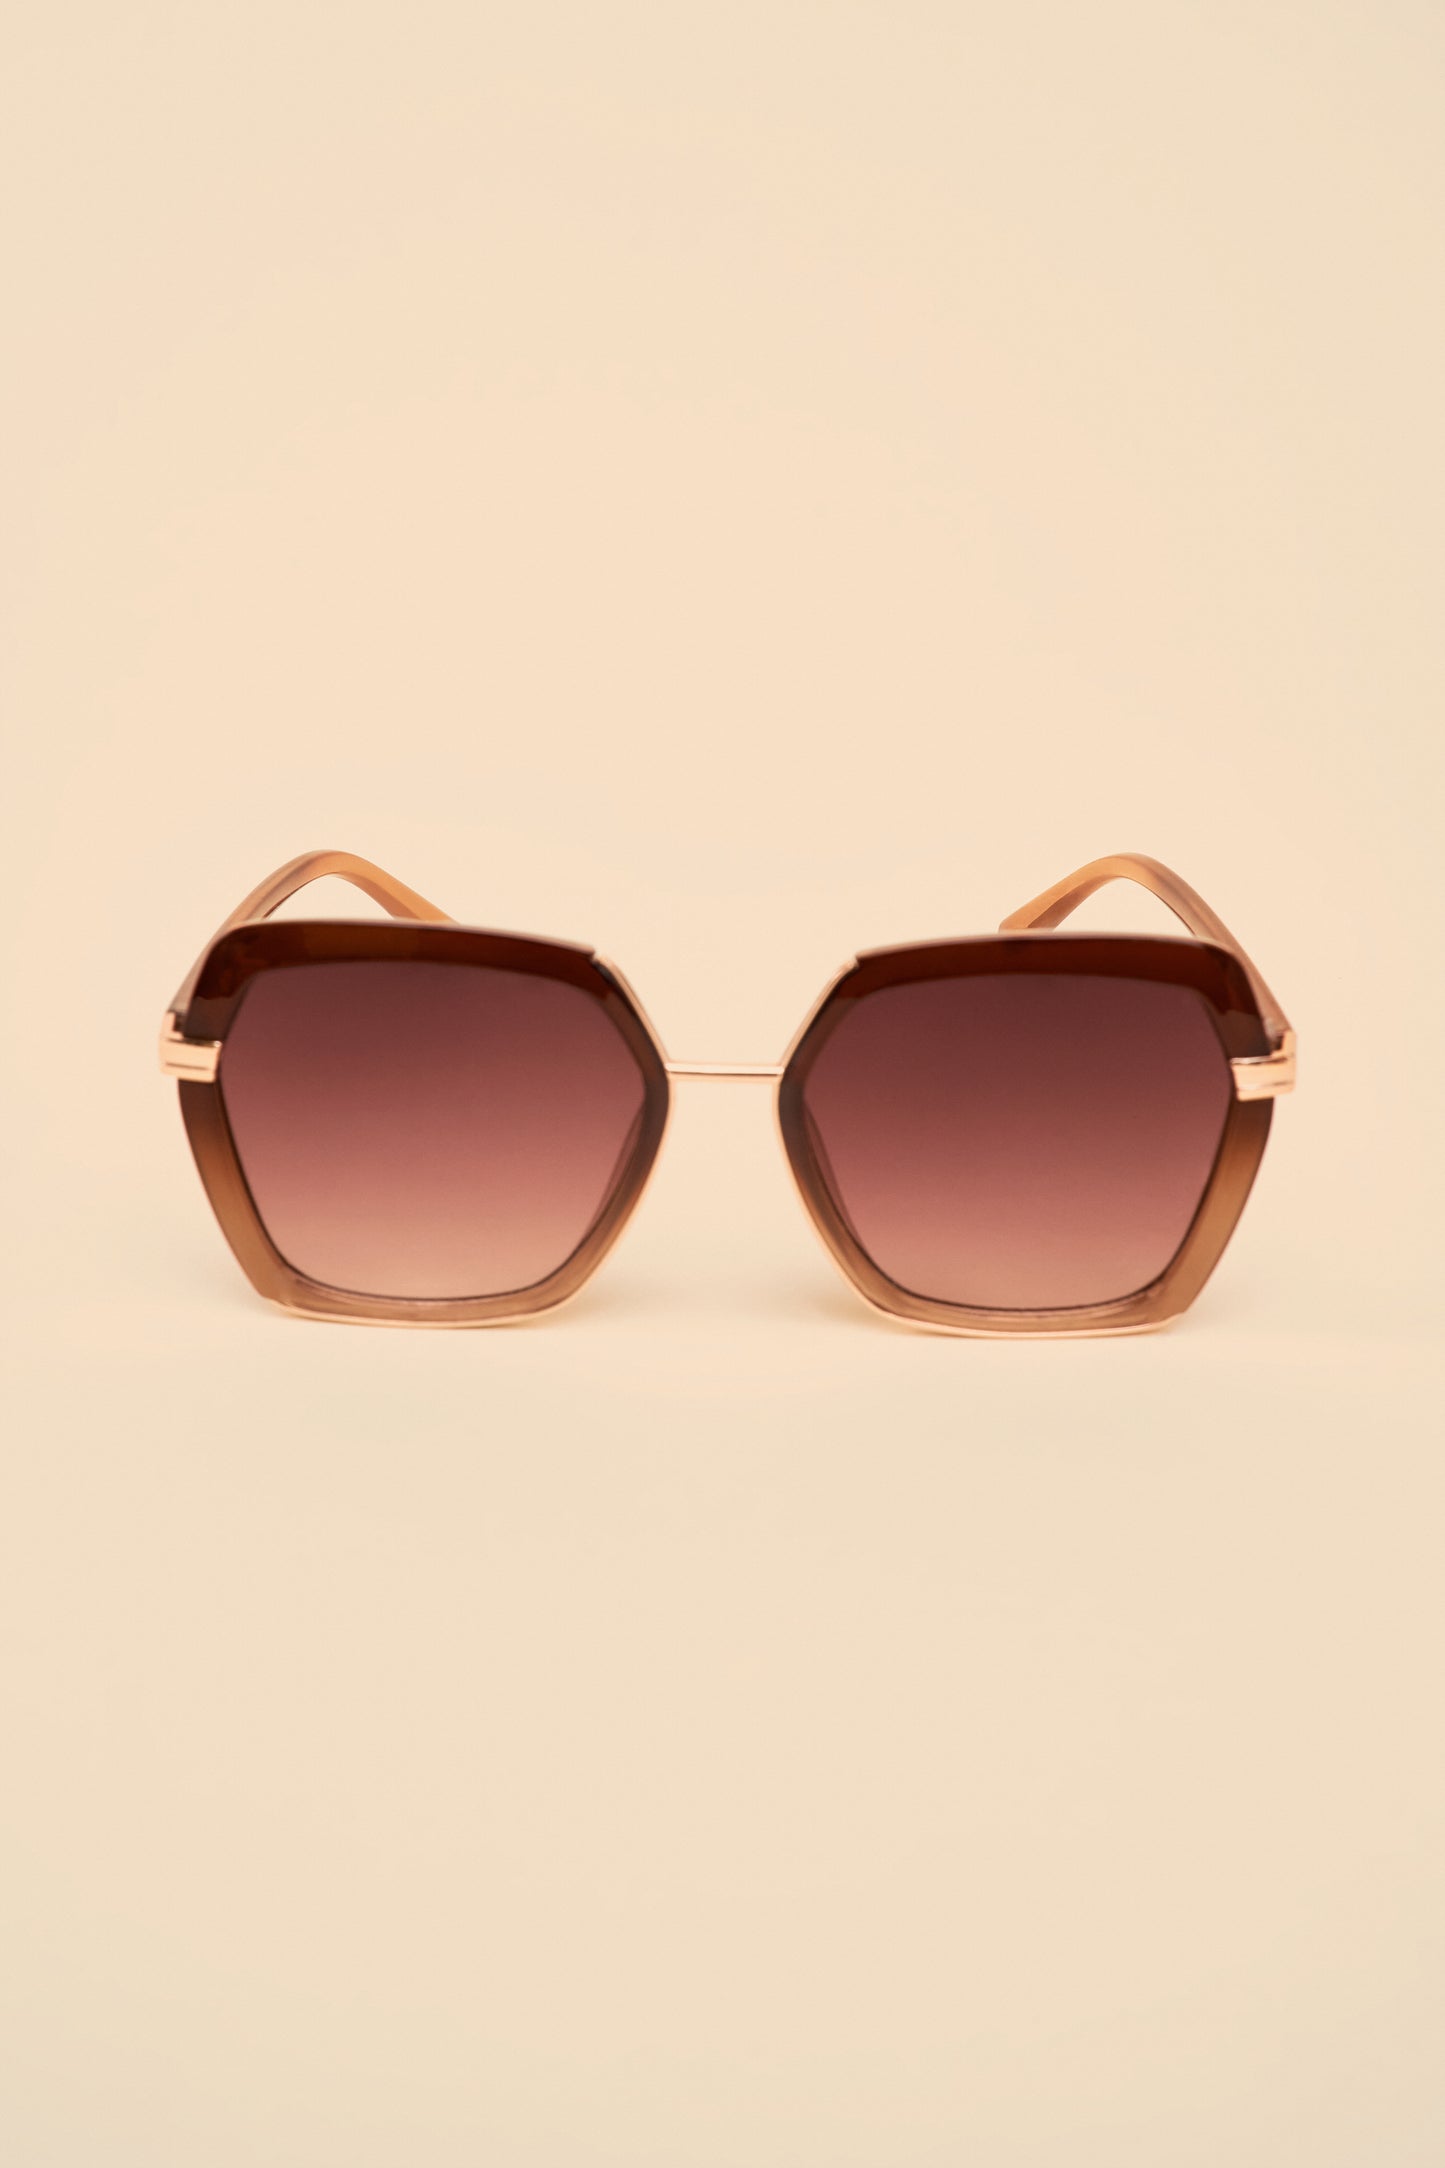 Powder Design Ltd - Accessories Sunglasses Mahonany (2182)